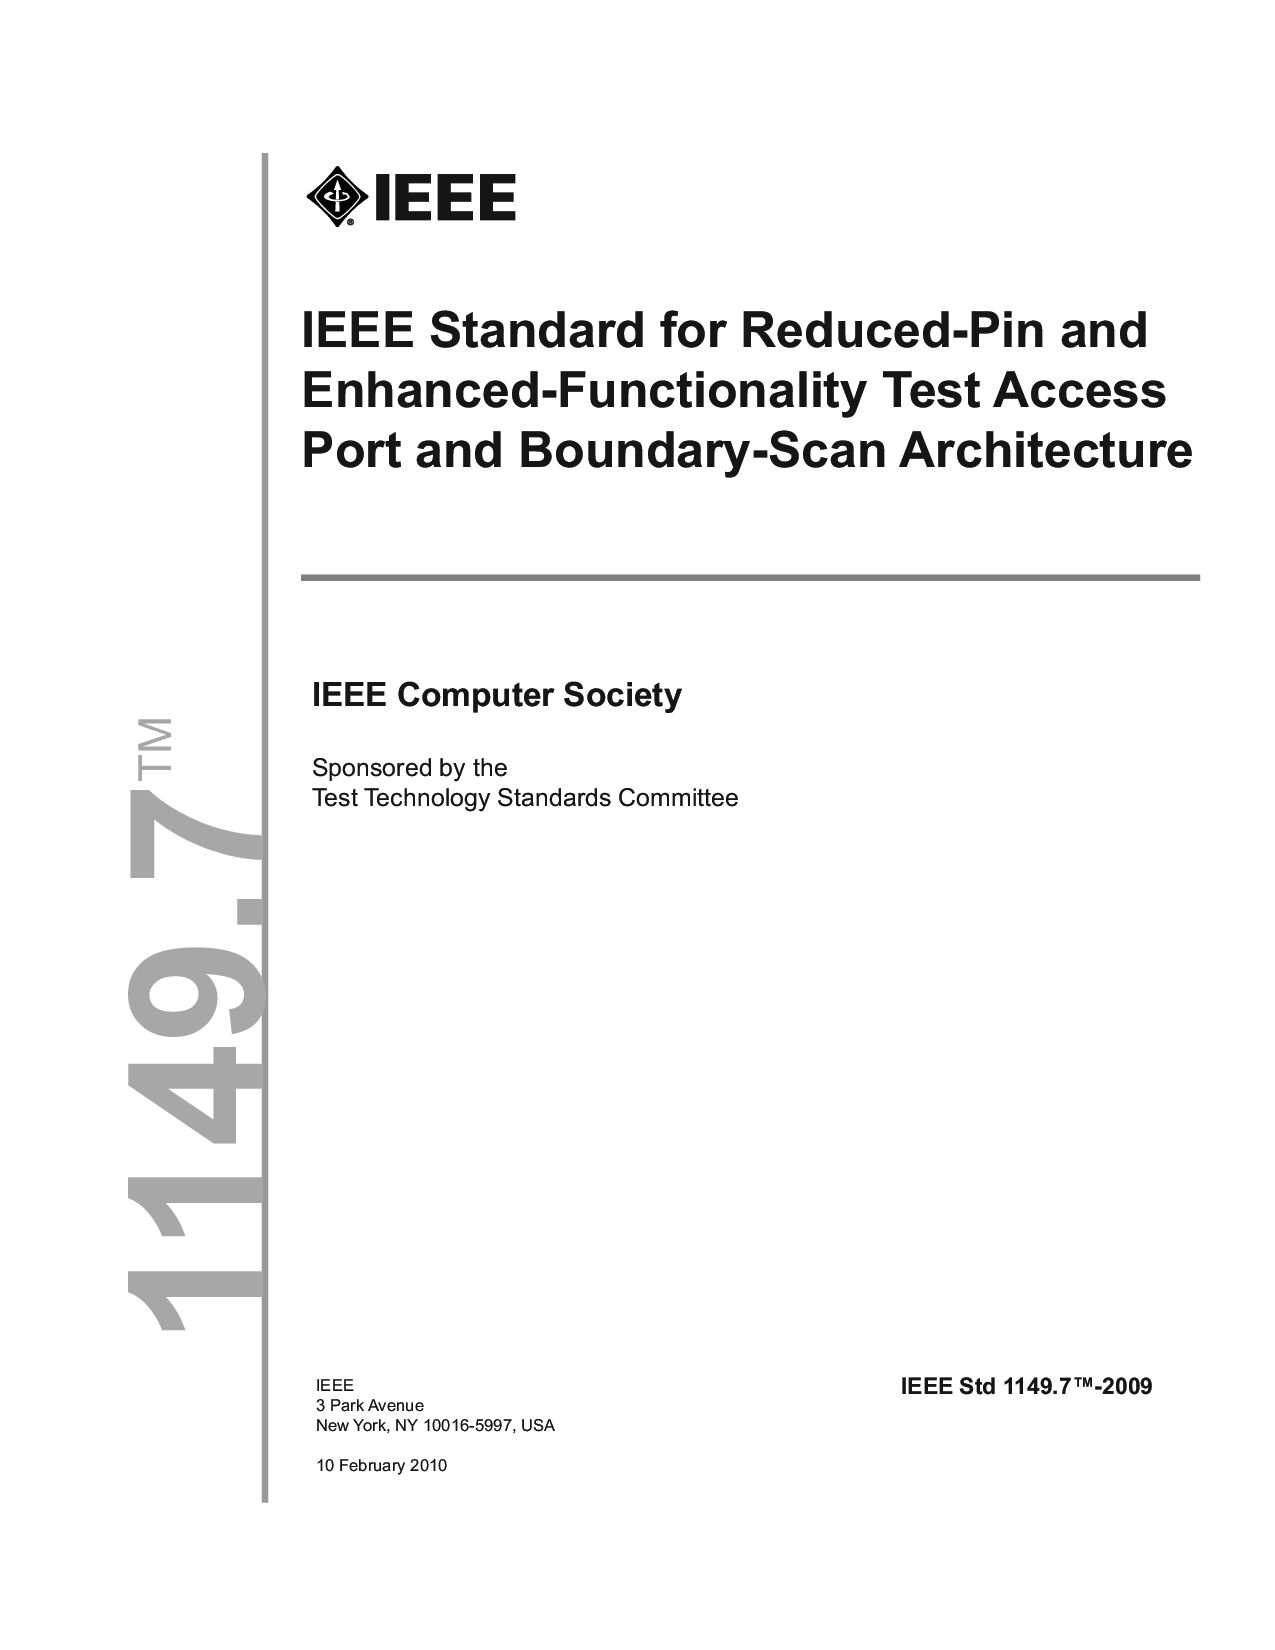 IEEE 1149.7:2009